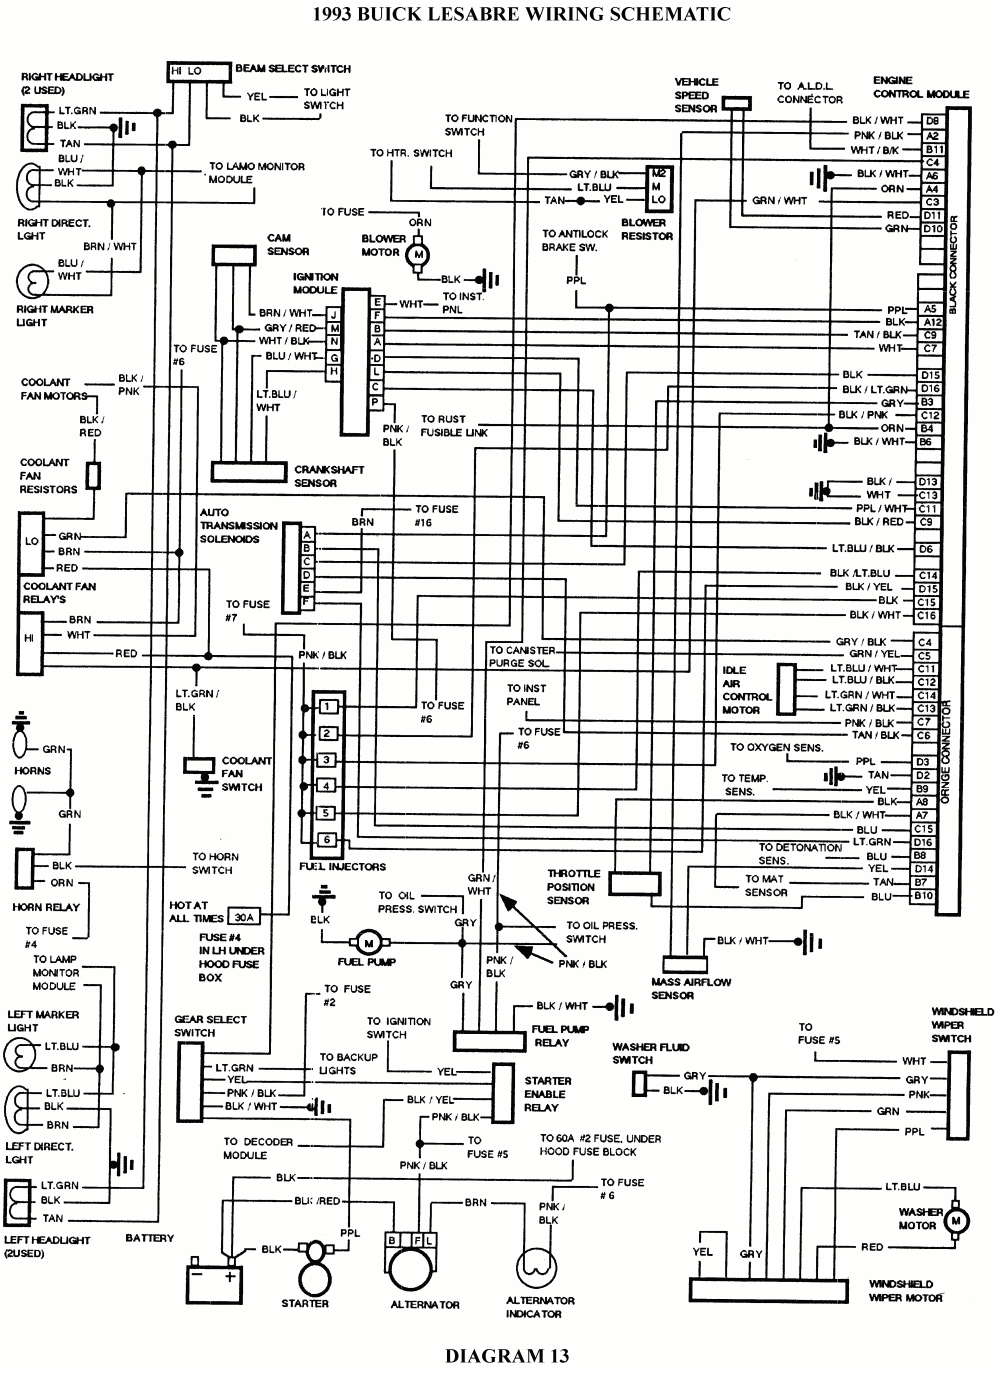 1999 buick century engine diagram wiring diagram for 1983 buick century wiring diagram gif